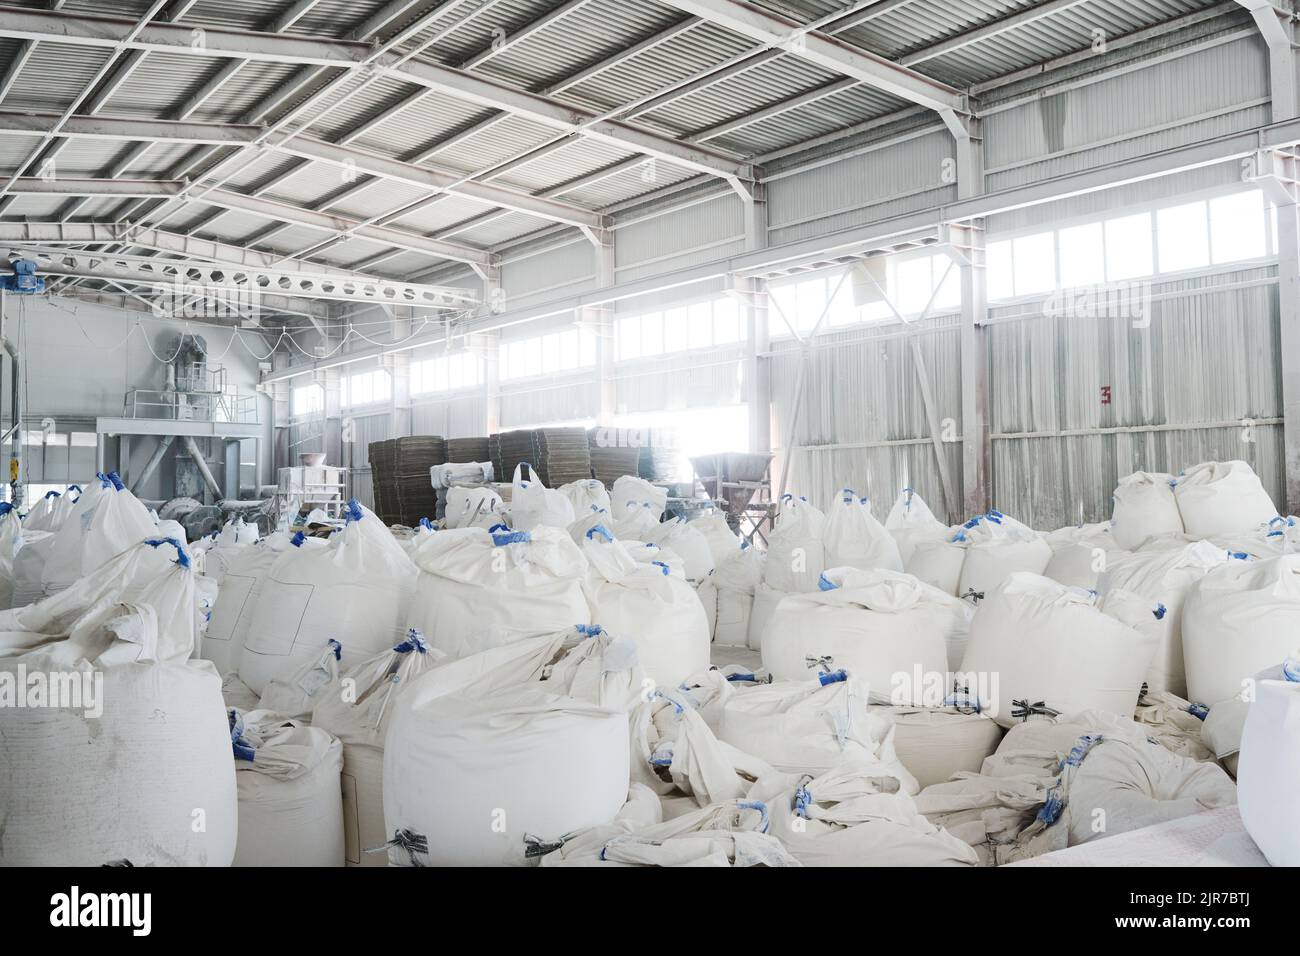 Parte di un magazzino spazioso o di un magazzino con mucchi di sacchi bianchi enormi contenenti materie prime sfuse per la produzione industriale Foto Stock